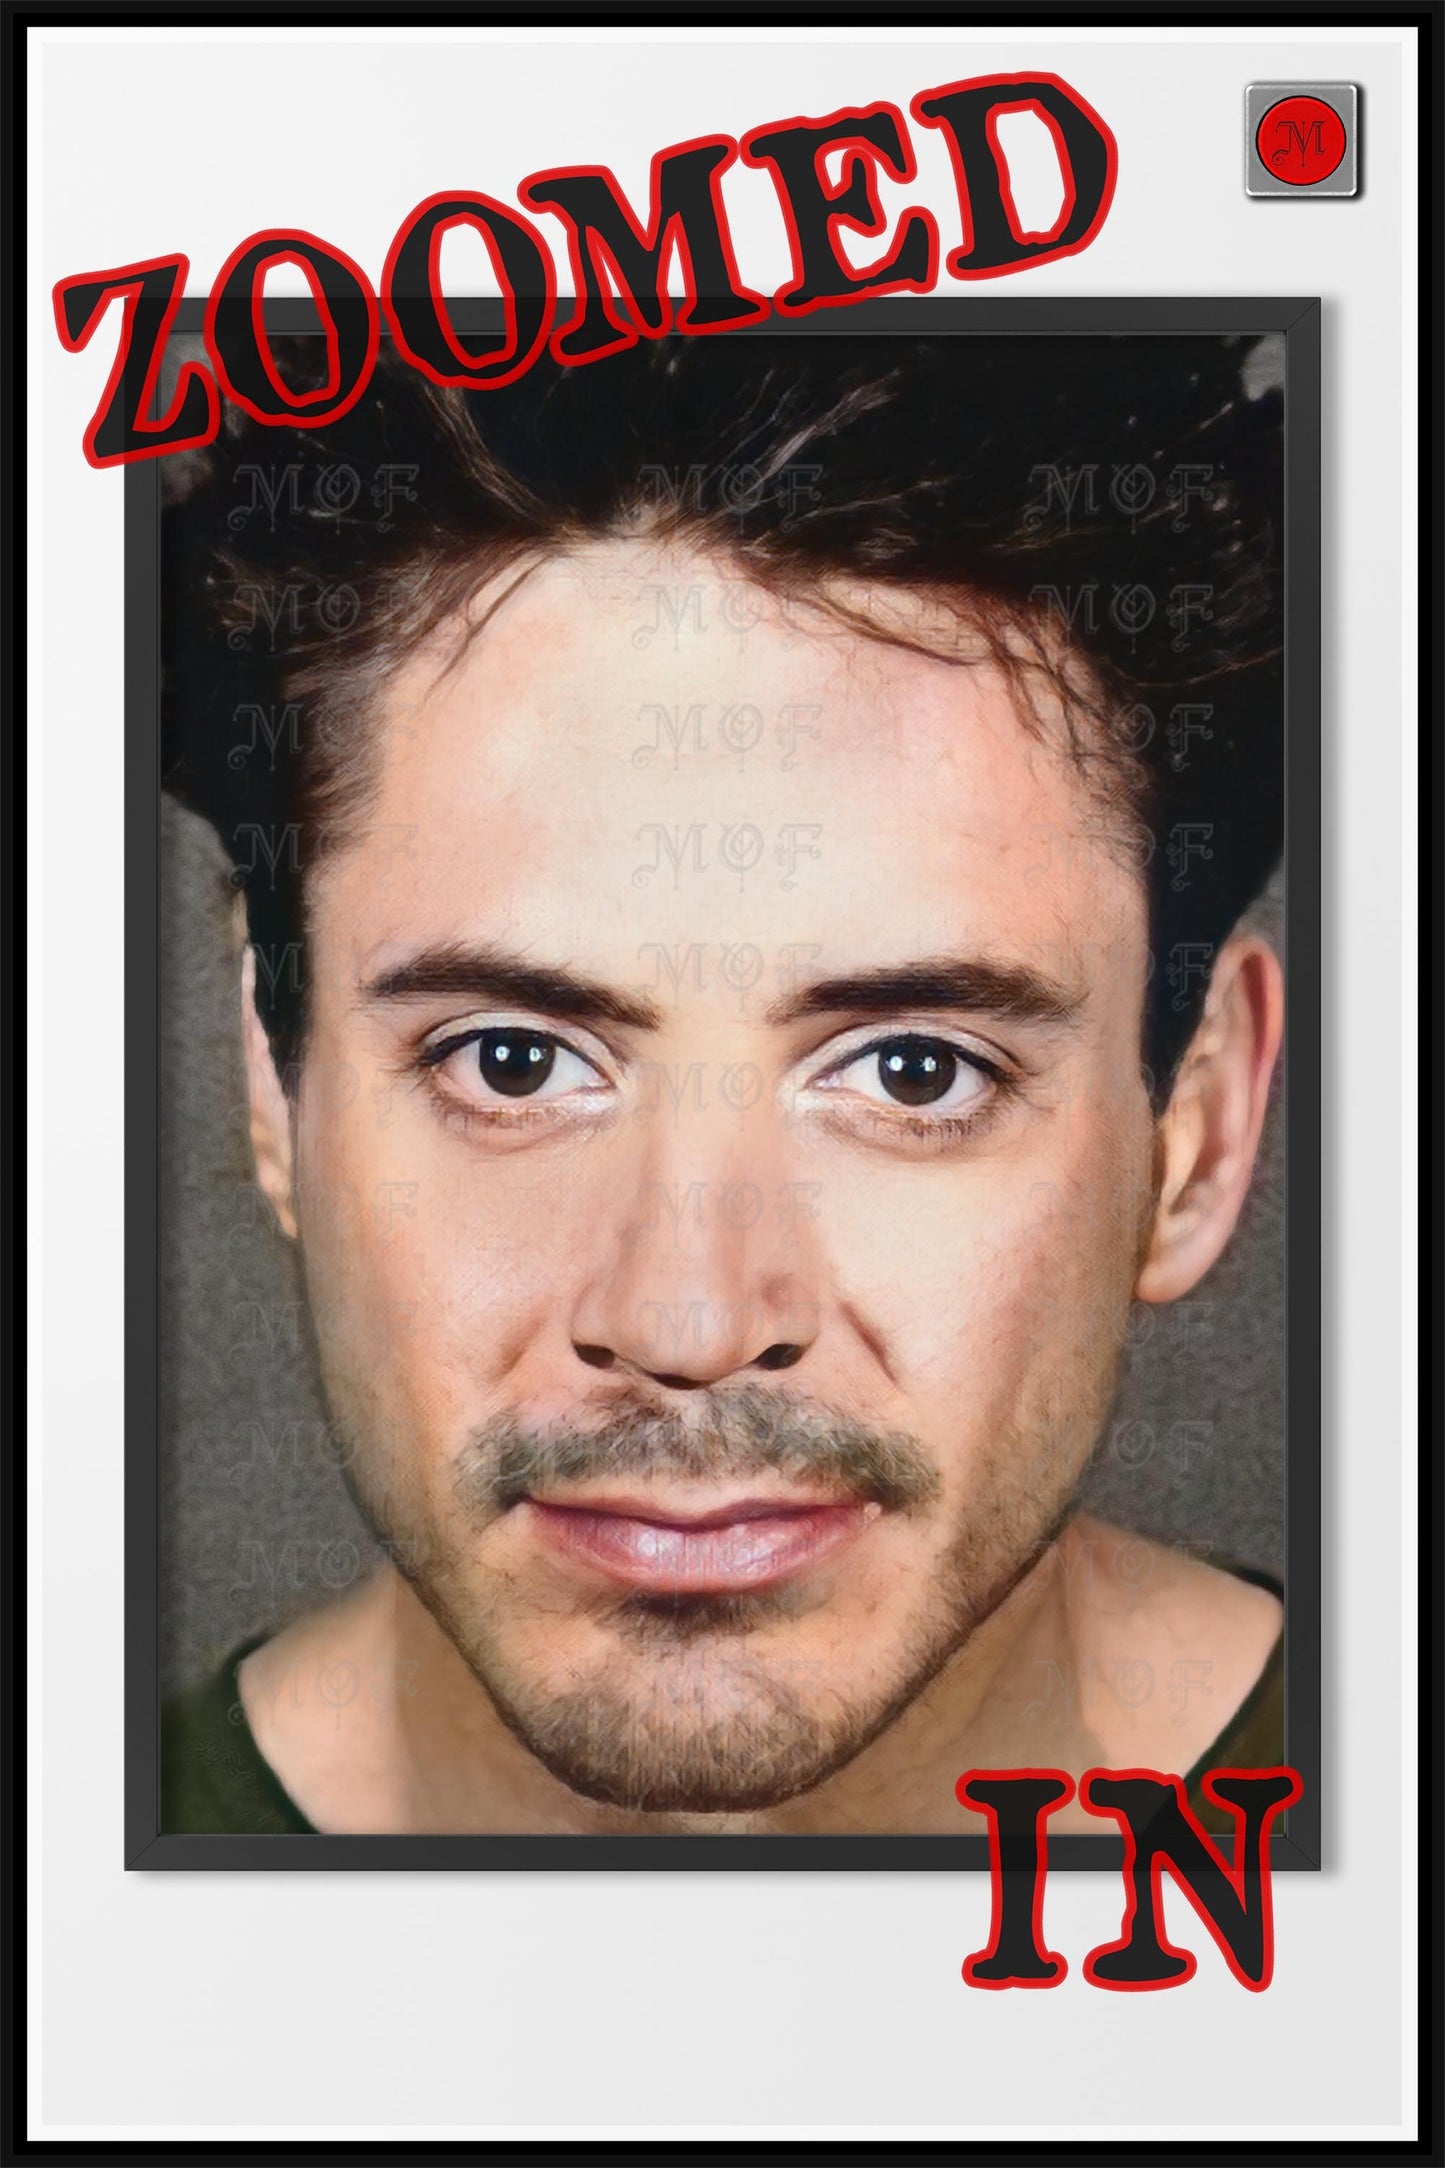 Robert Downey Jr Mugshot Poster Celebrity Photo REMASTERED #34 MUG